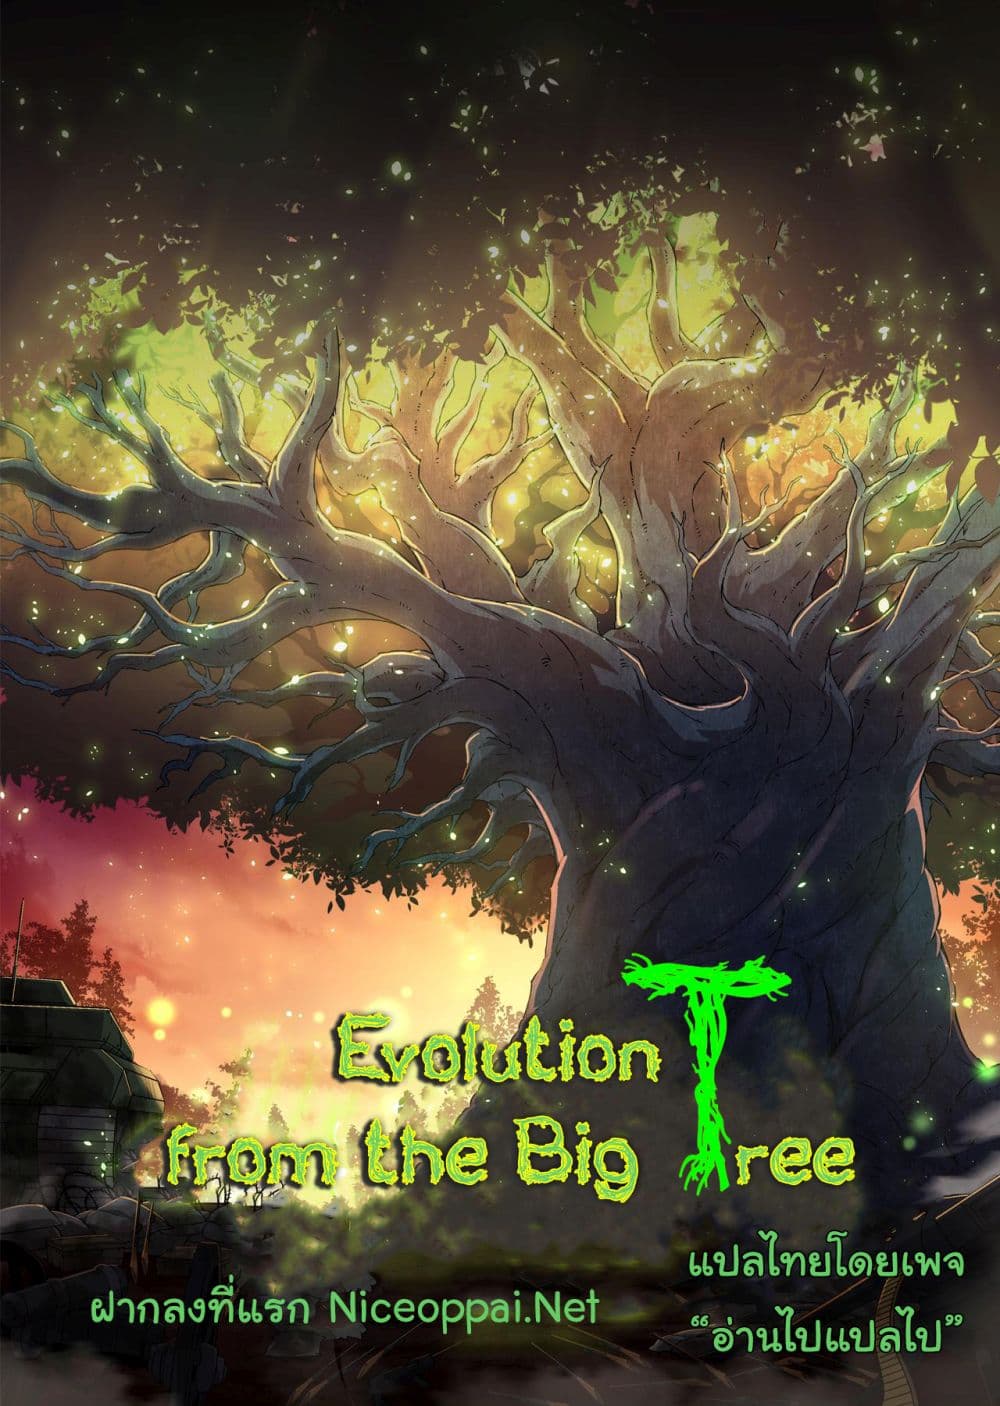 Evolution from the Big Tree Ã Â¸â€¢Ã Â¸Â­Ã Â¸â„¢Ã Â¸â€”Ã Â¸ÂµÃ Â¹Ë† 8 (1)